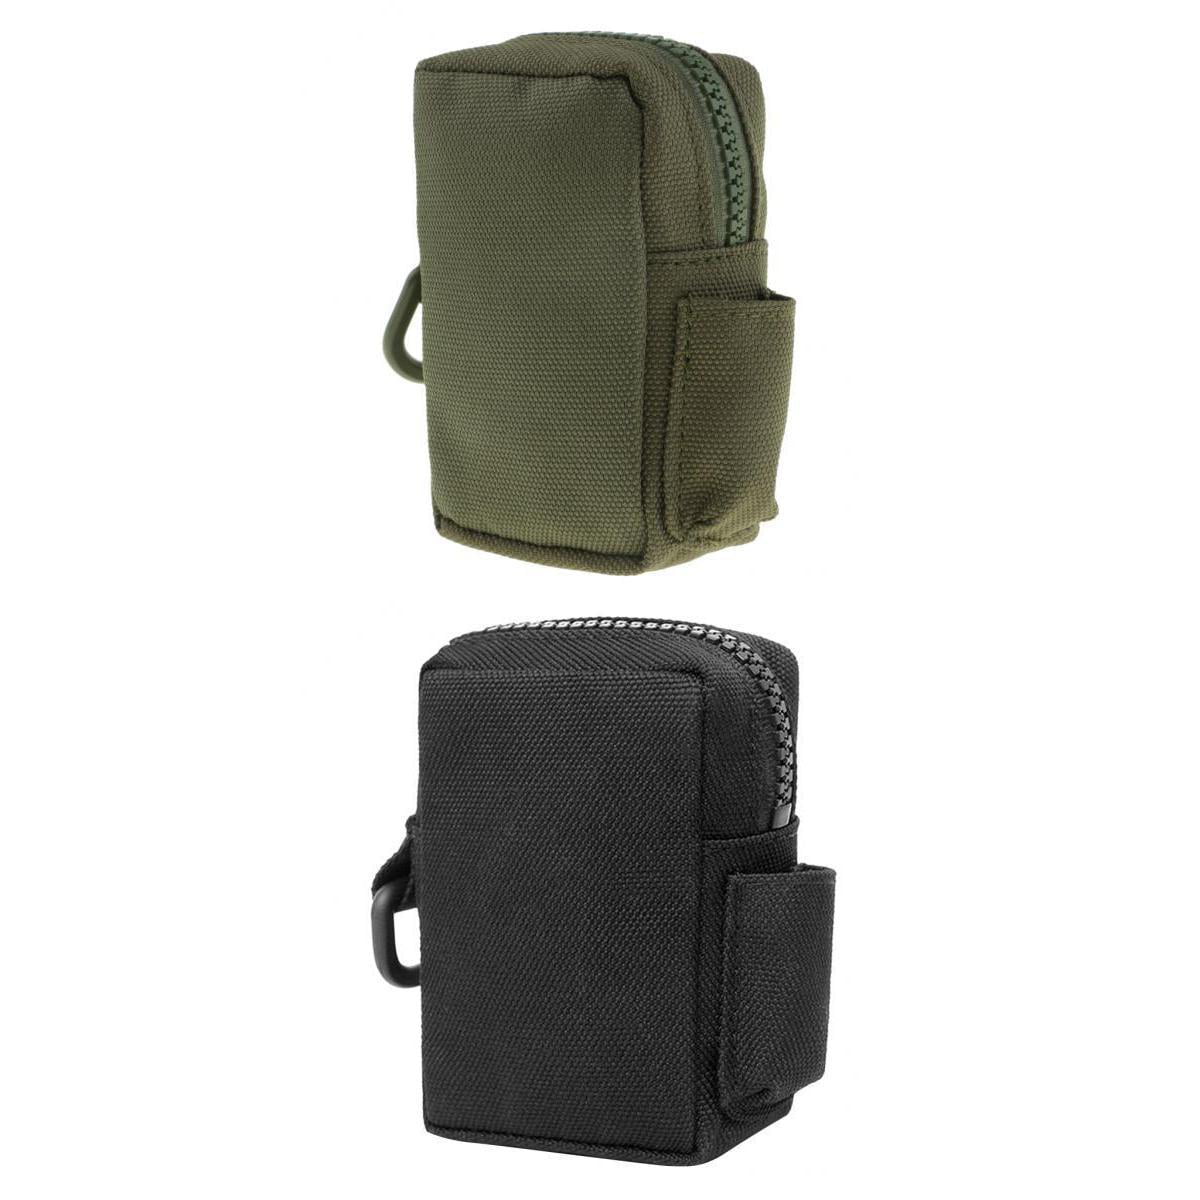 2pcs Portable Molle Gadget Pouch Oxford Utility Belt Pouch Accessory Bag Black 